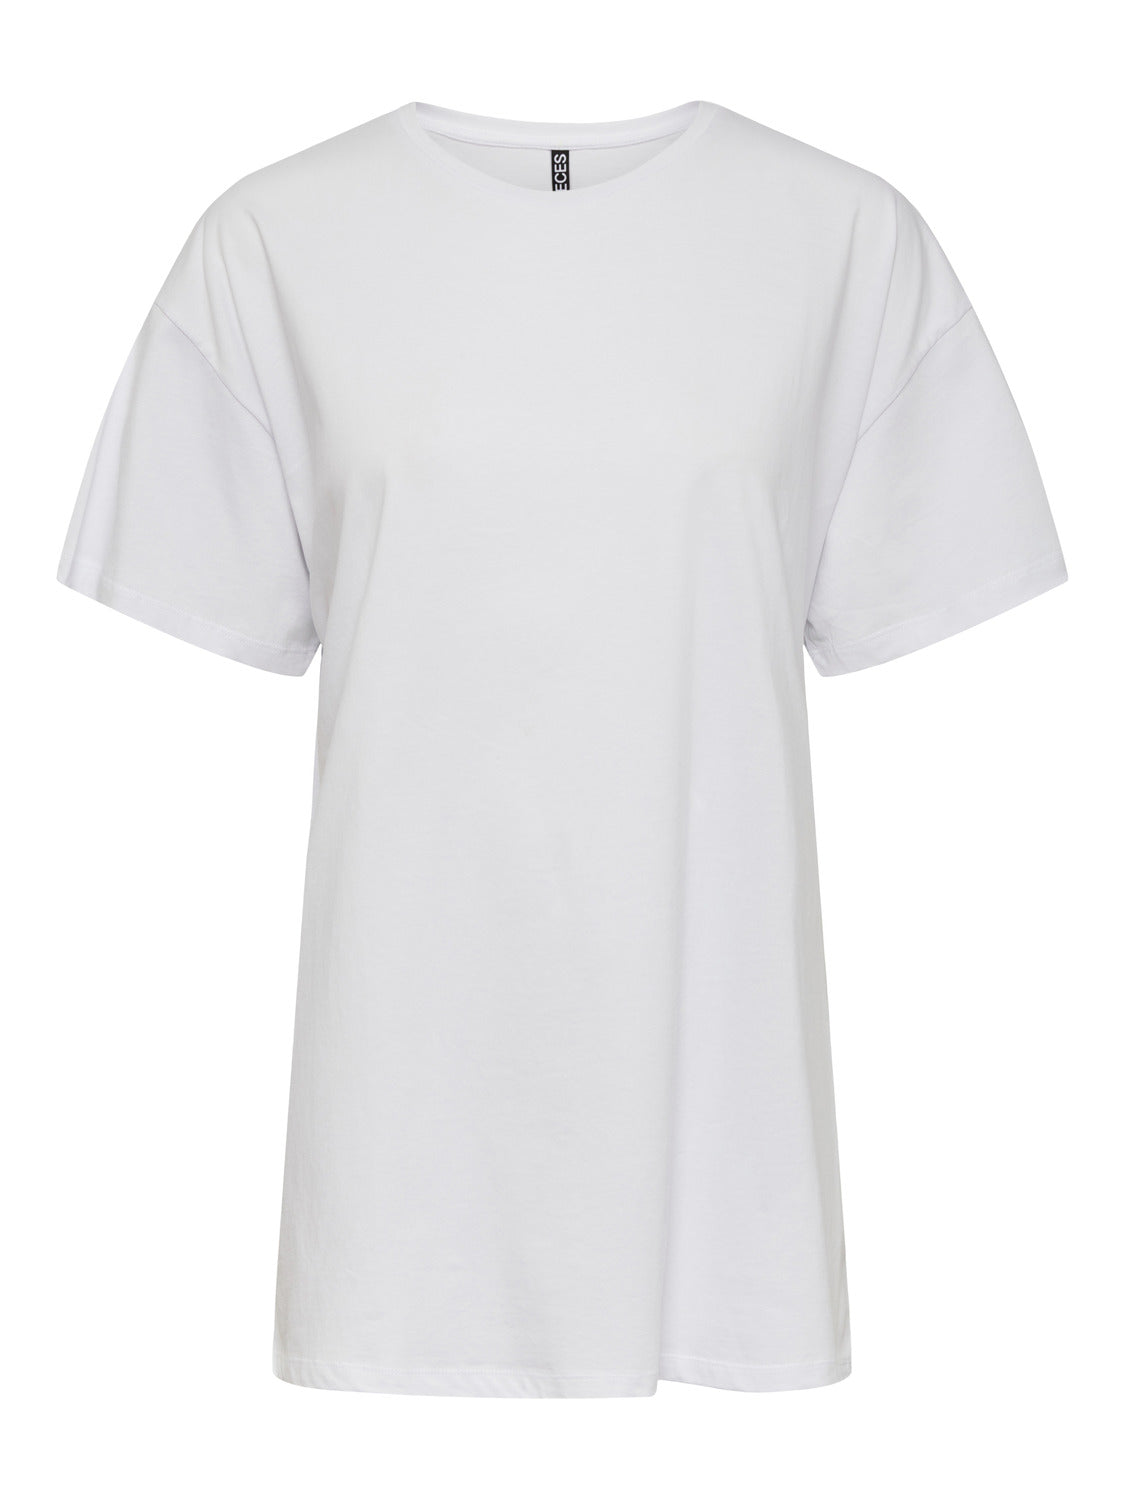 PCRINA T-Shirt - Bright White